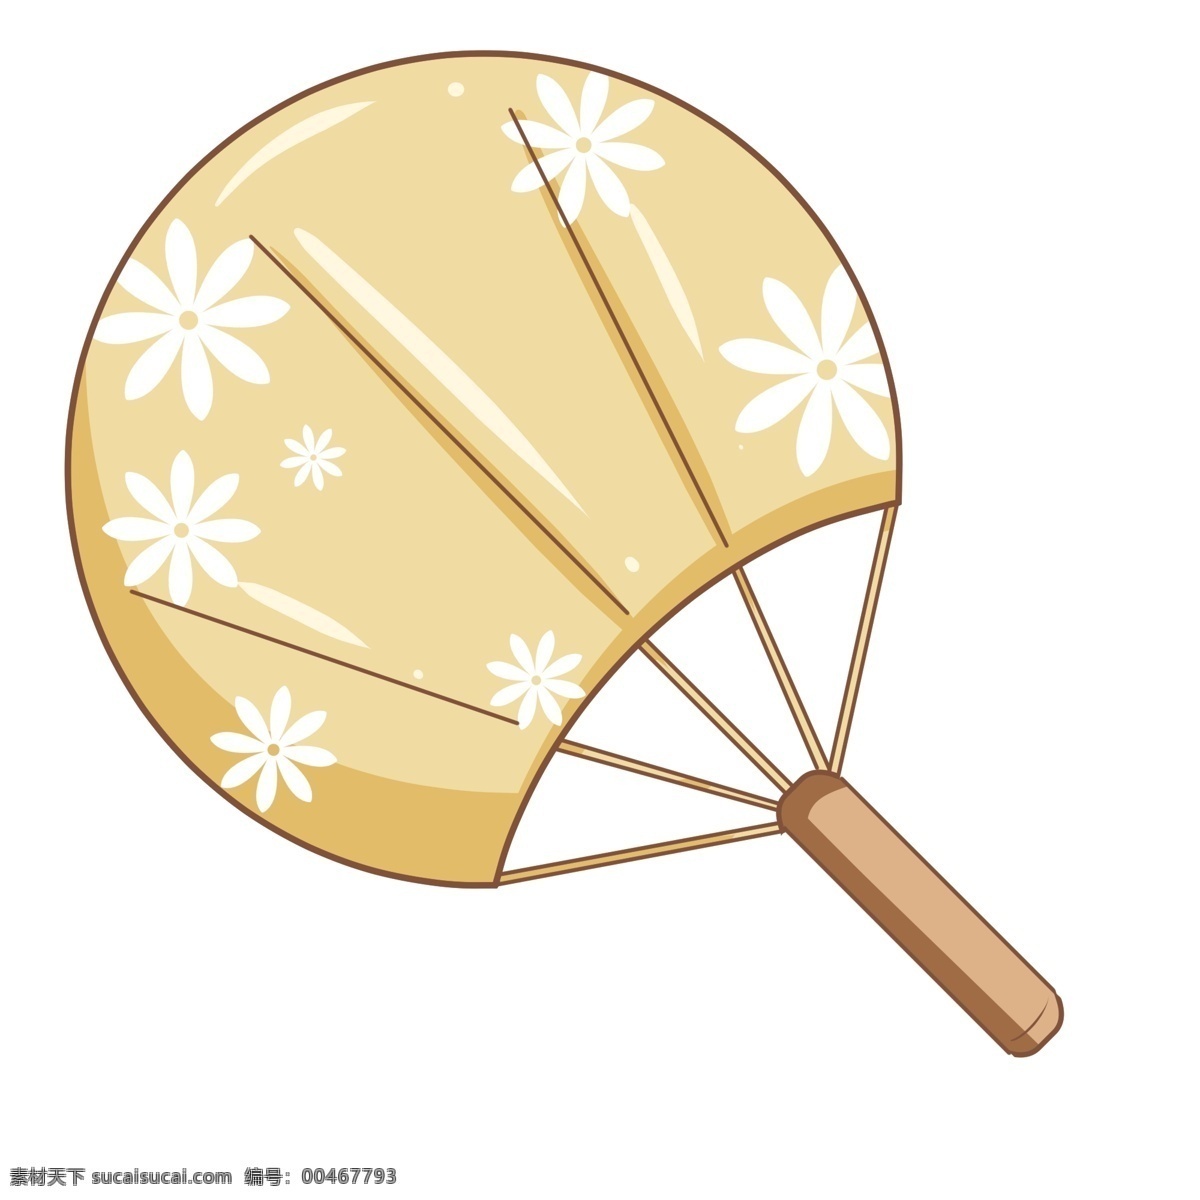 日本 樱花 扇子 插图 樱花扇子 日式扇子